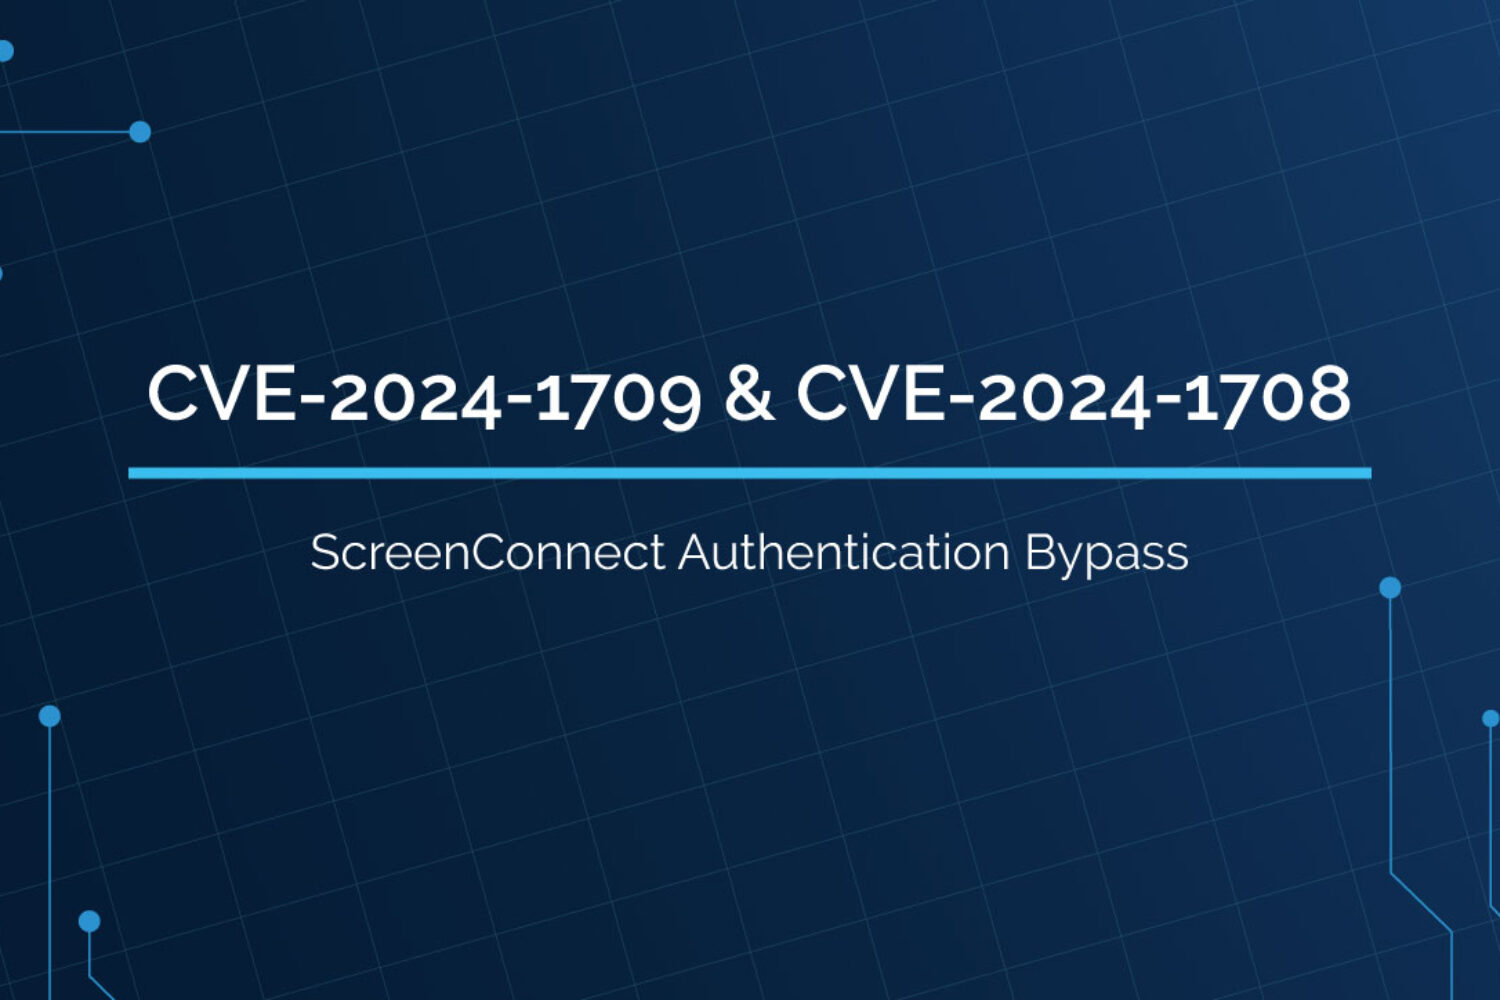 ScreenConnect Authentication Bypass (CVE20241709 & CVE20241708